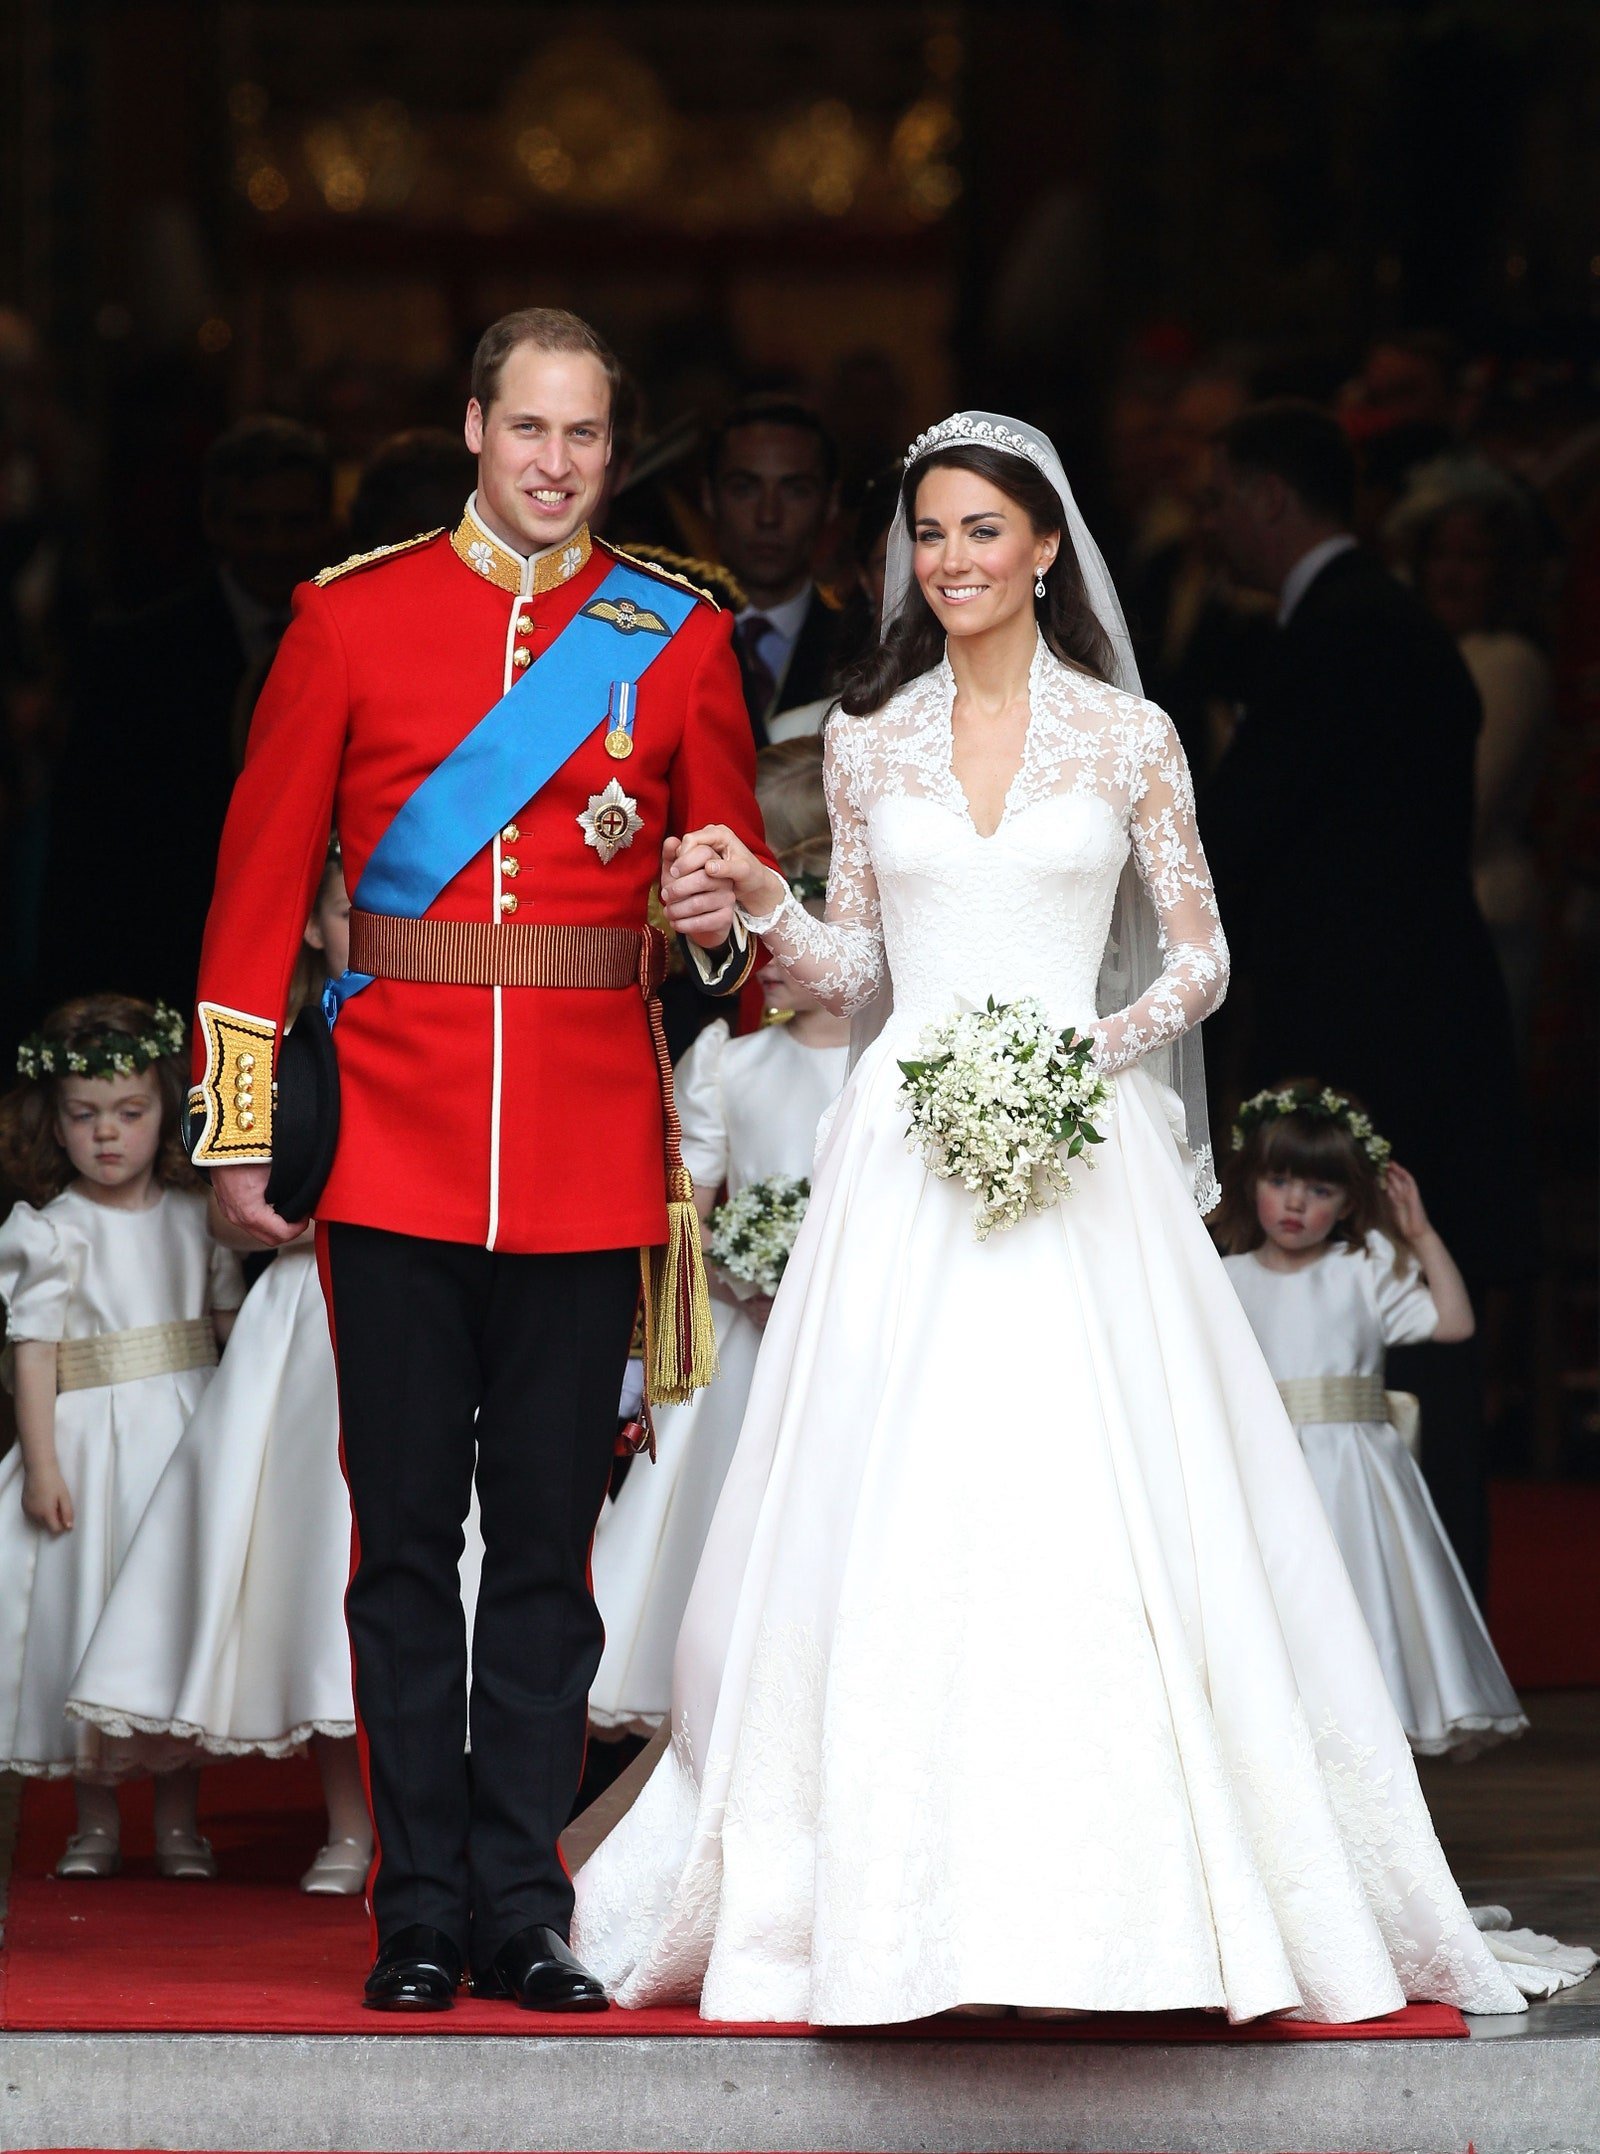 Le prince William, duc de Cambridge, et Catherine, duchesse de Cambridge, sourient après leur mariage royal à l'abbaye de Westminster, le 29 avril 2011 à Londres, en Angleterre. | Source : Getty Images